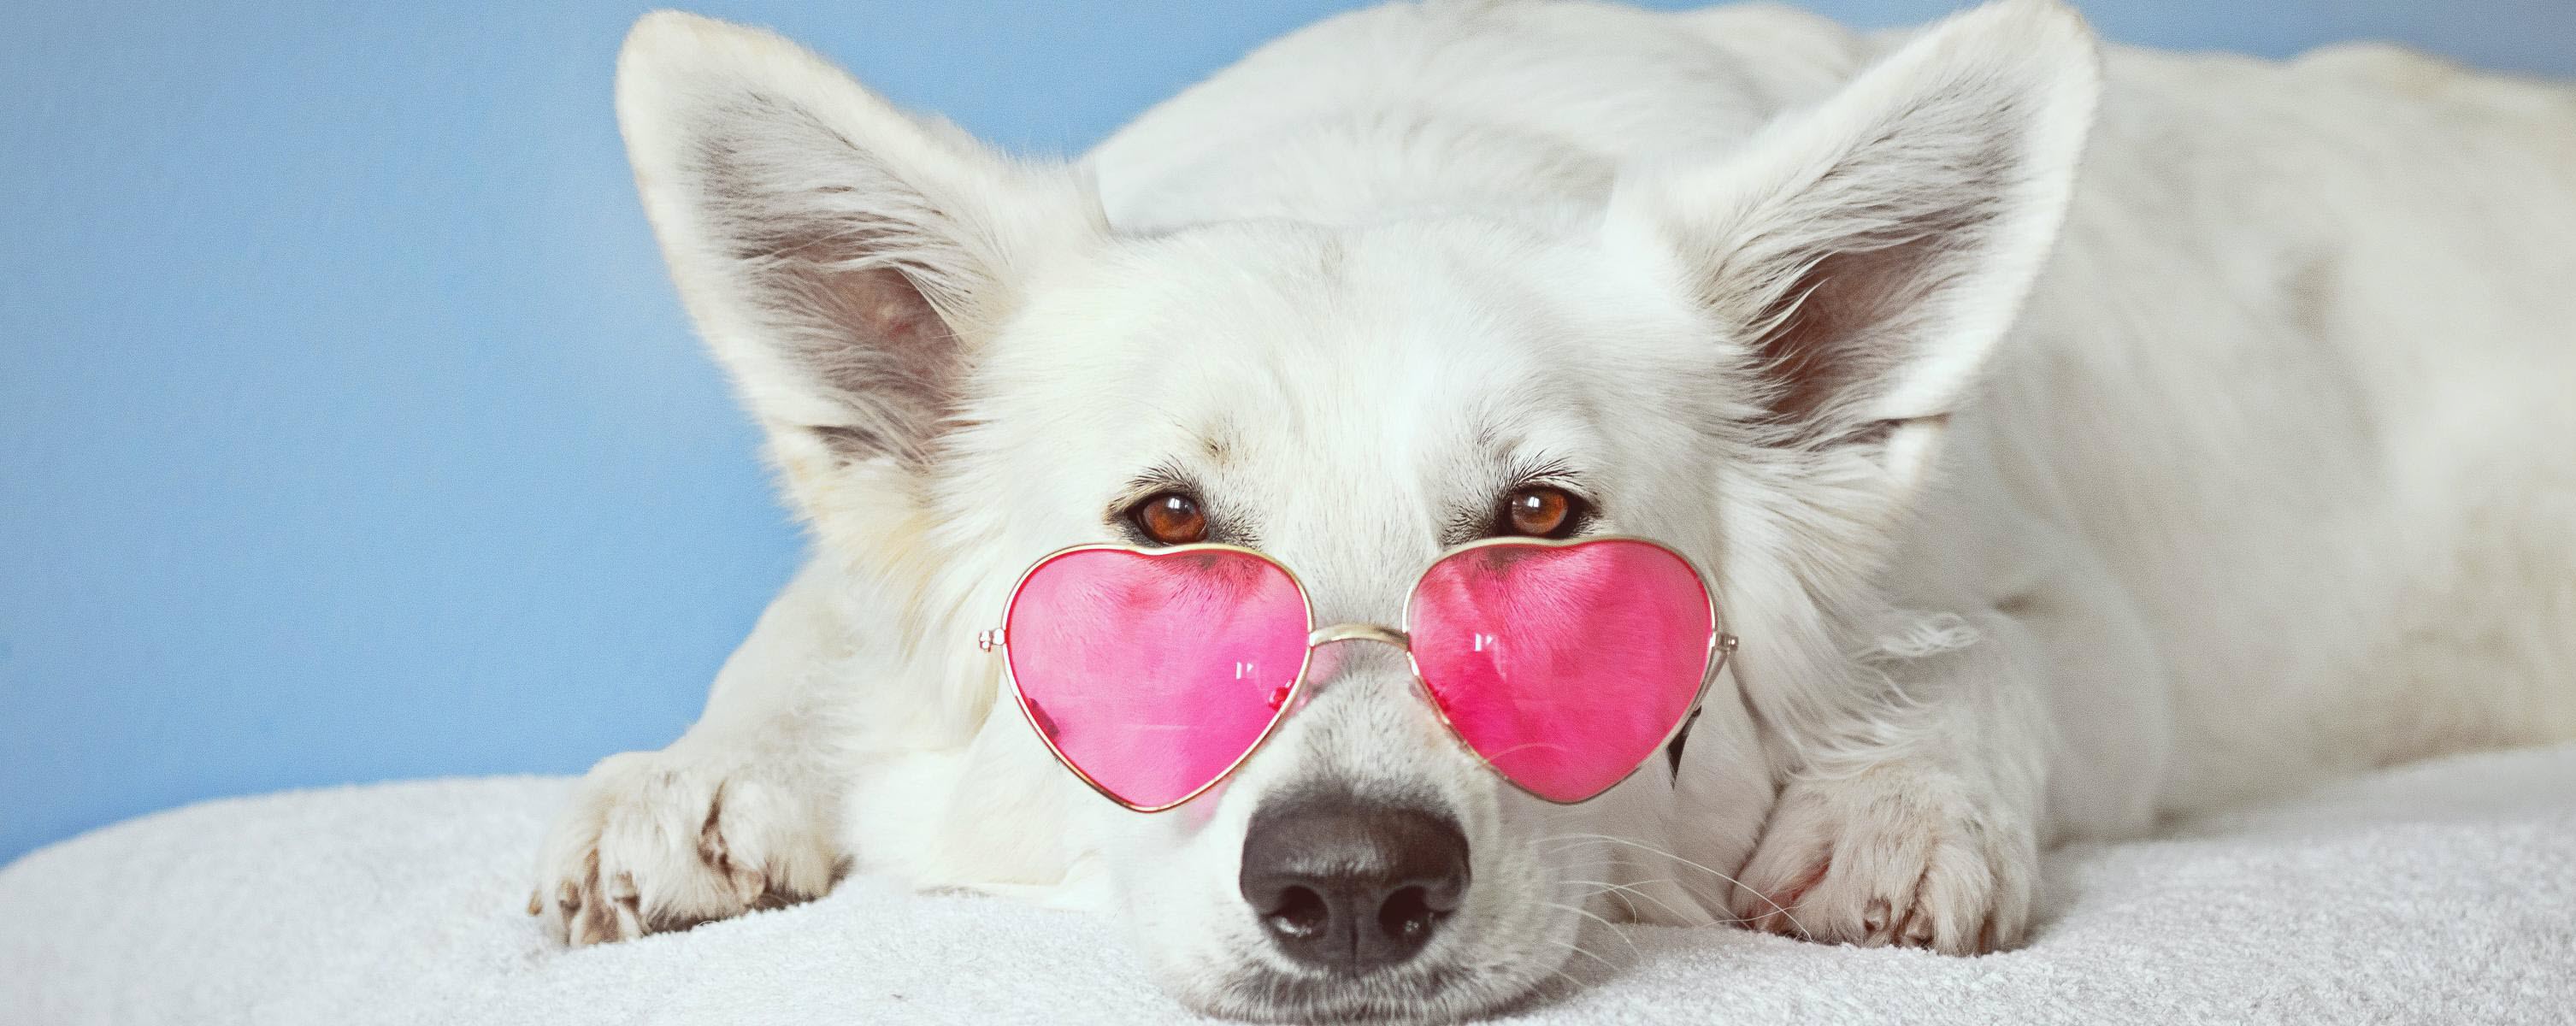 Chó đeo kính - Bức tranh đẹp nhất